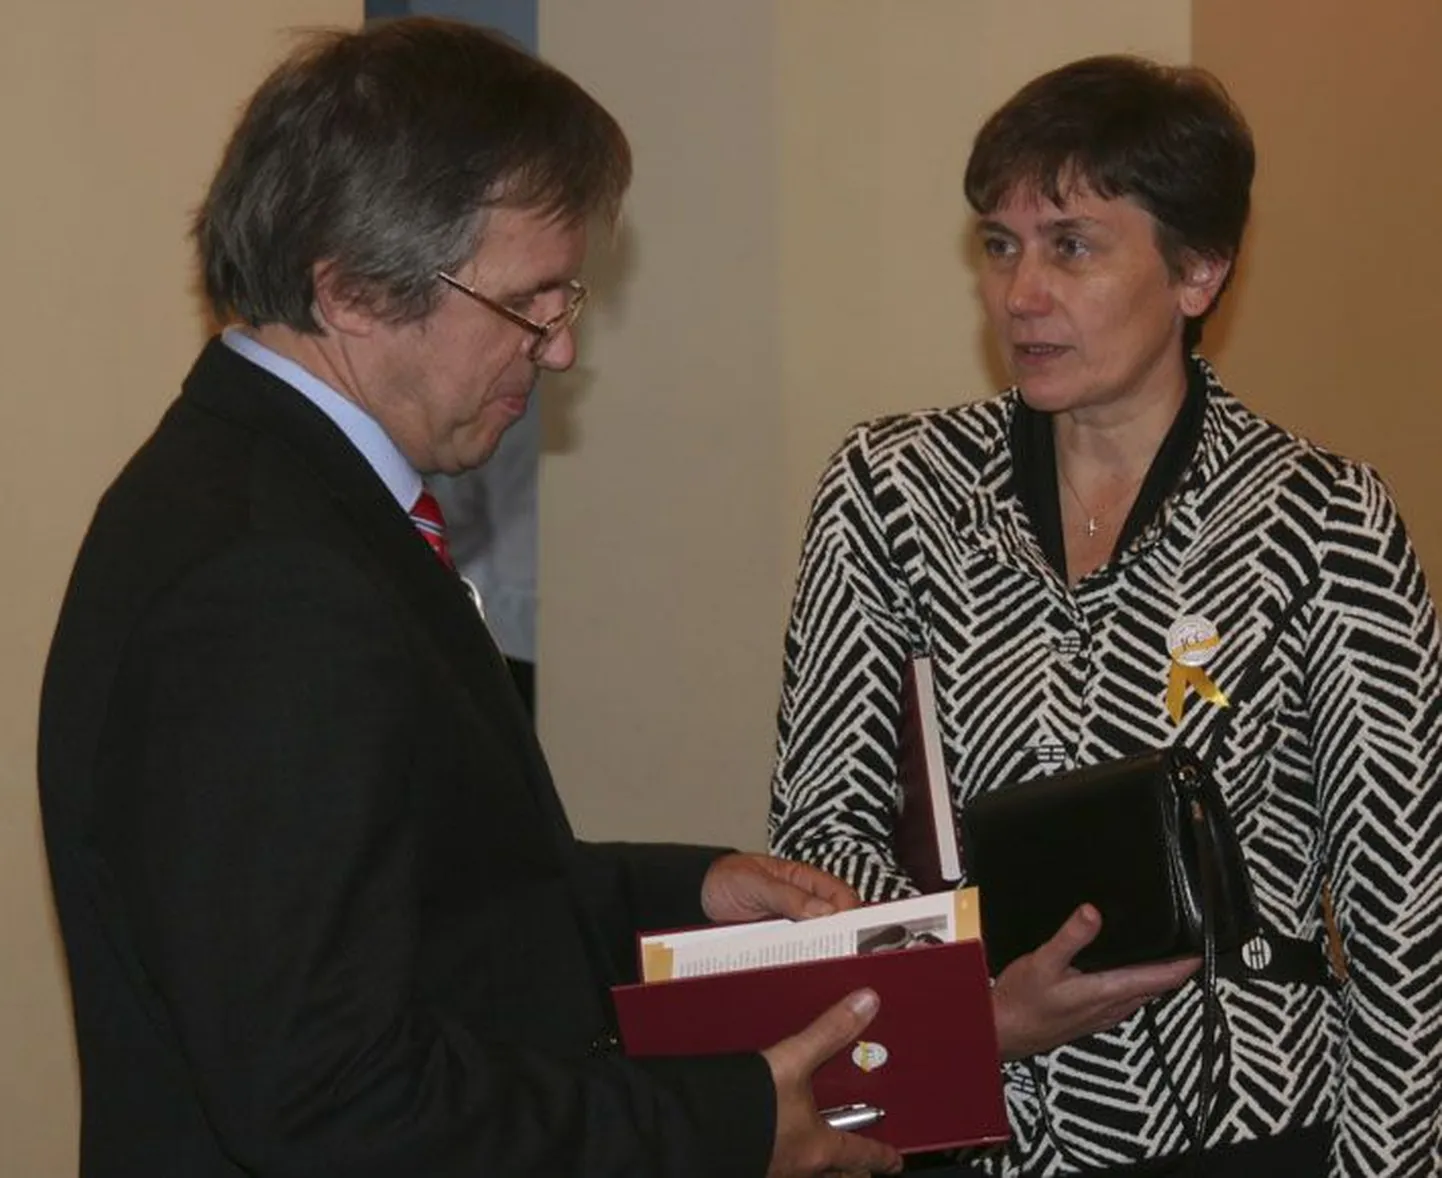 Mullune aasta raamatukoguhoidja ja raamatukogu ajalooraamatu koostaja Aili Höövelsoo koos raamatu kirjastaja Avo Seidelbergiga.